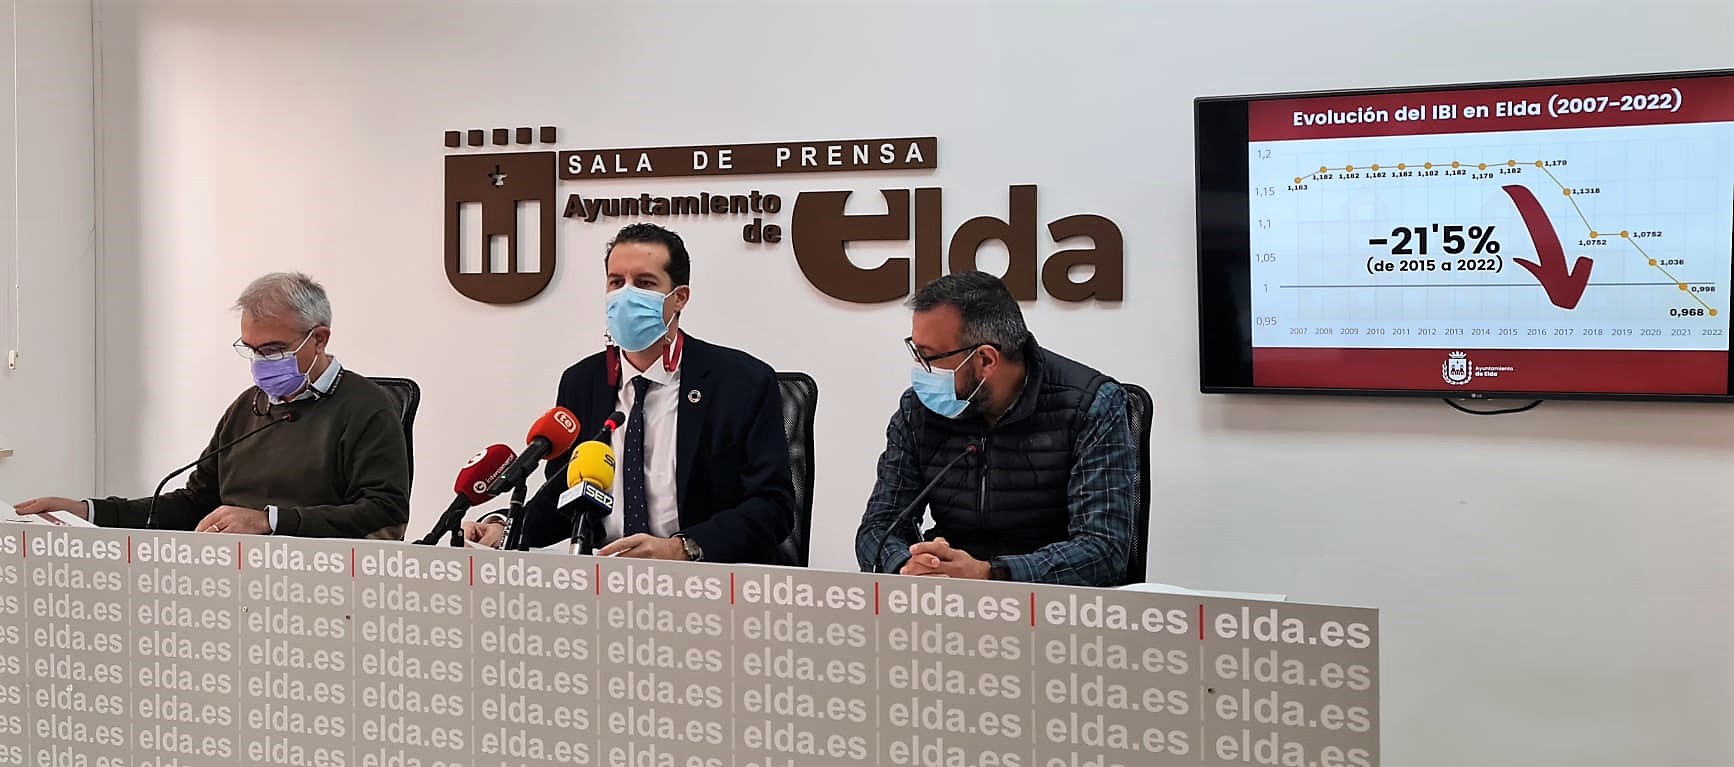 El Ayuntamiento de Elda aplica una nueva reducción del tipo impositivo del IBI y congela el resto de tasas e impuestos municipales